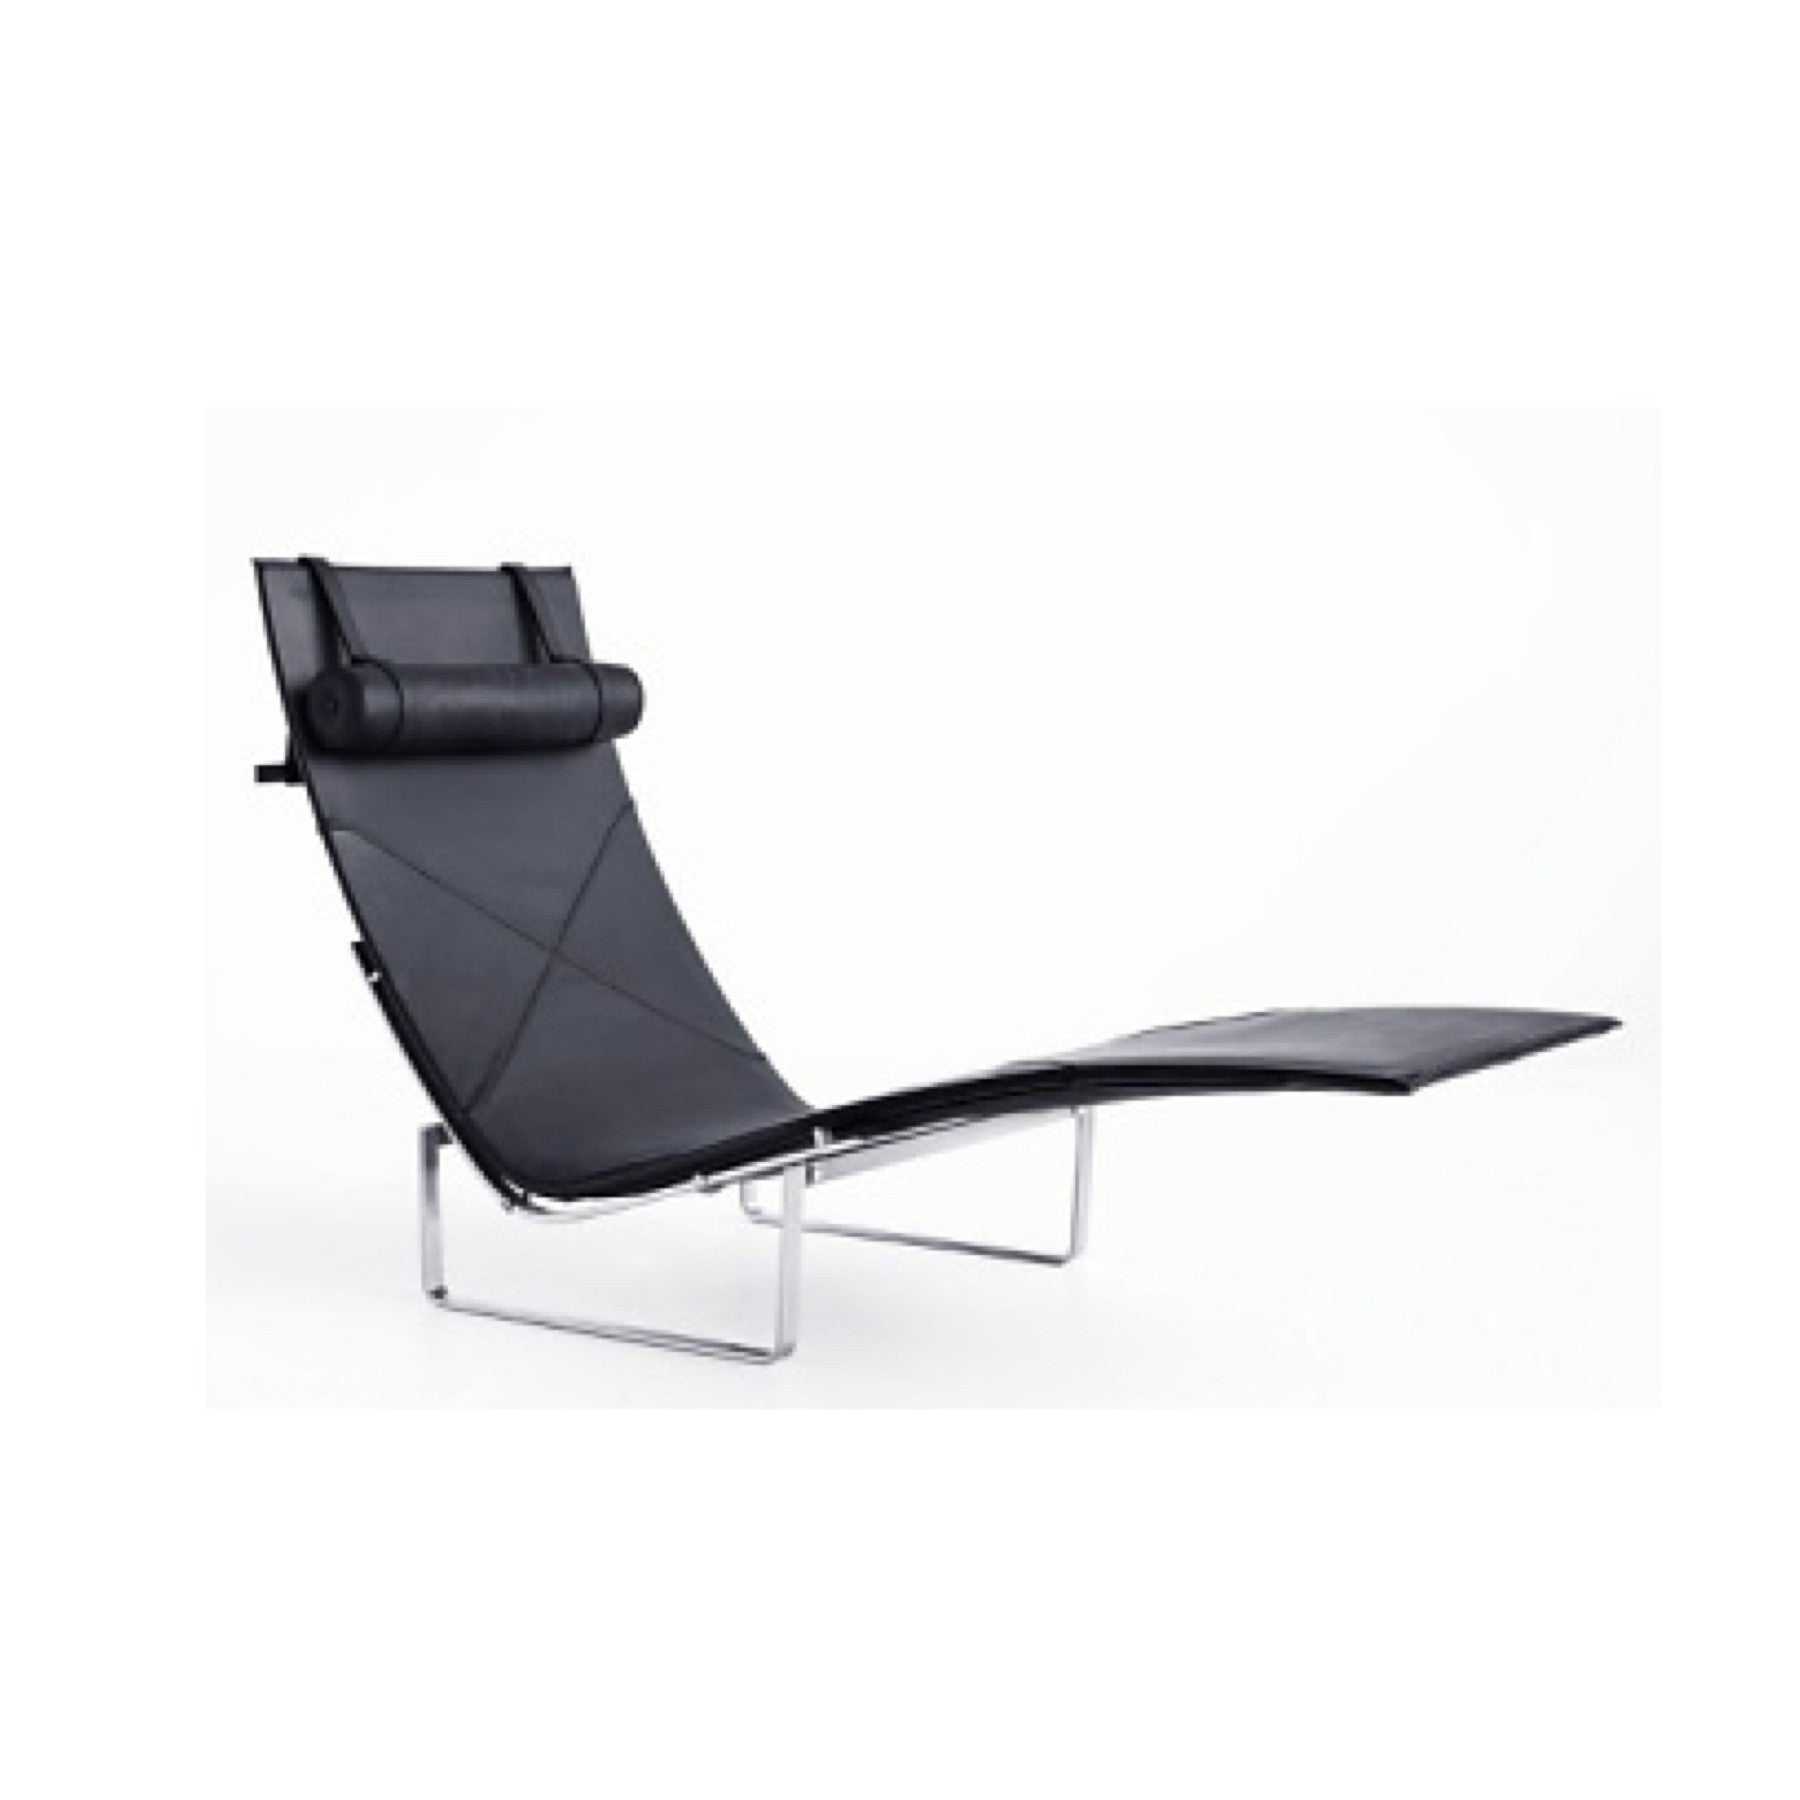 TR41004 Poul Kjarholm PK24 Style Lounge Chair